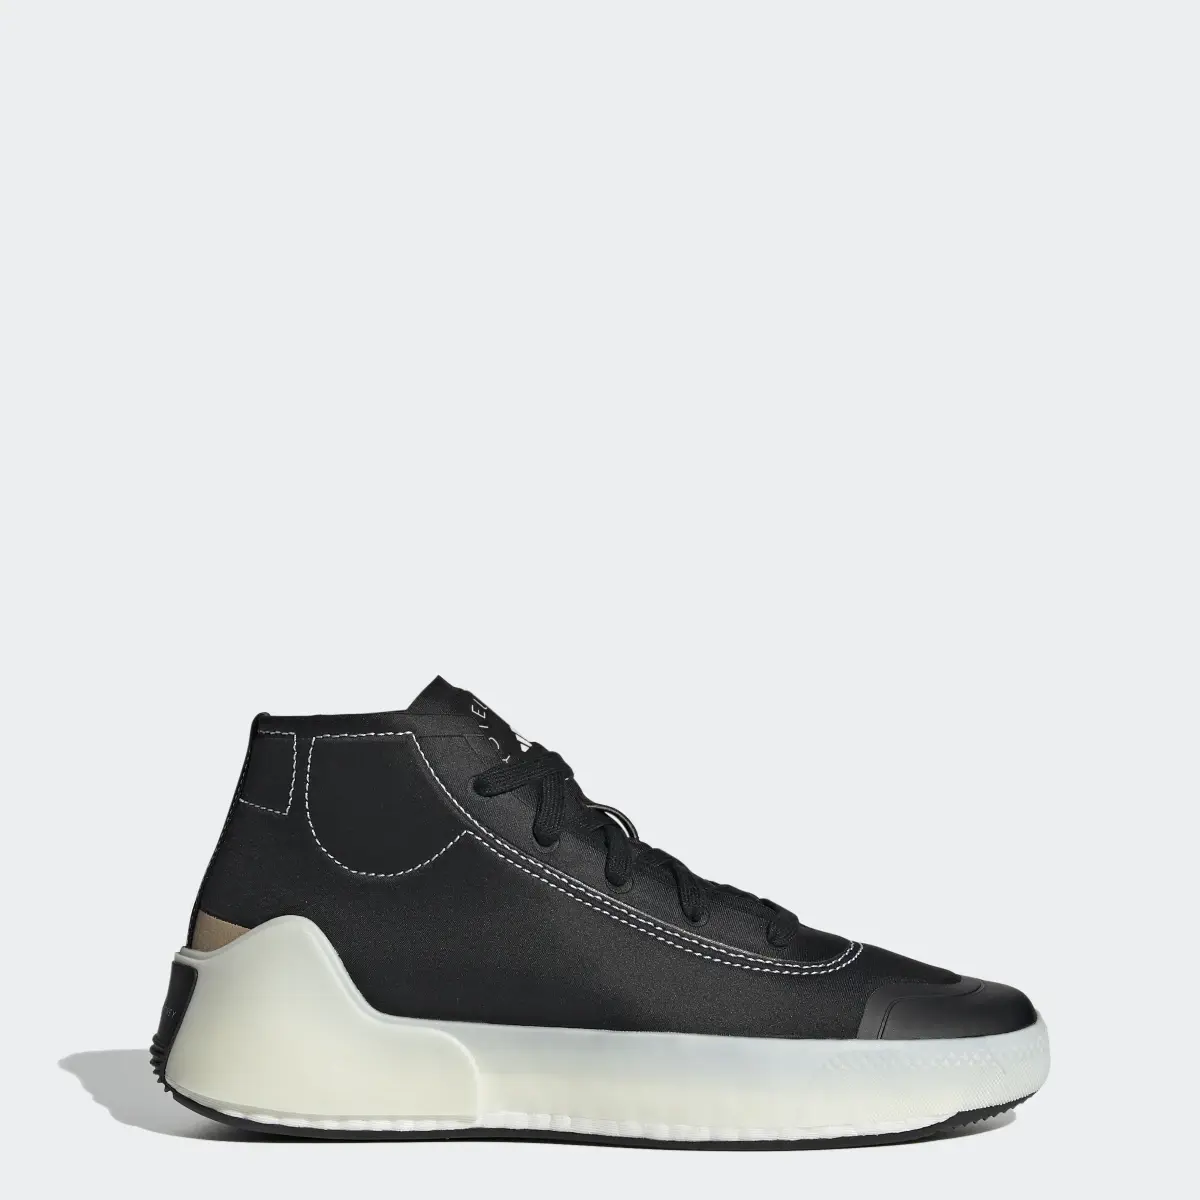 Adidas by Stella McCartney Treino Mid-Cut Shoes. 1